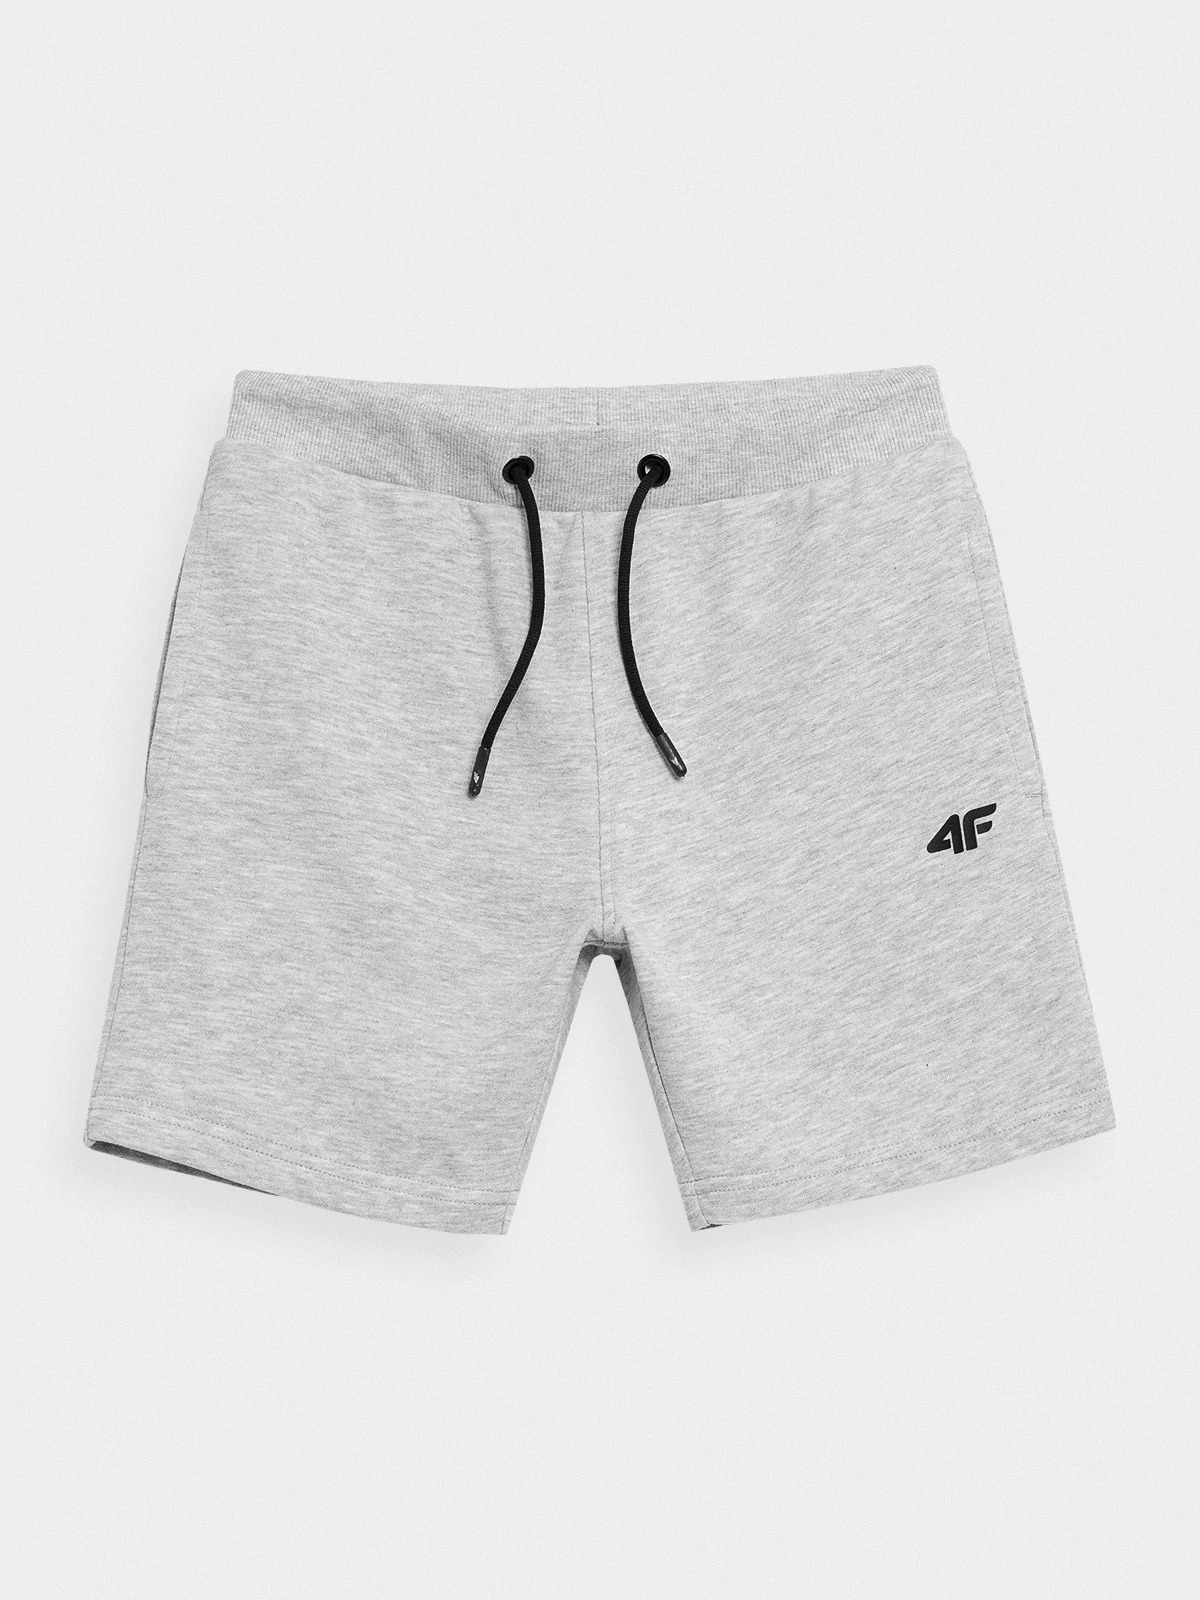 фото Шорты 4f boy's shorts hjz21-jskmd001b-27m цв.серый р. 158